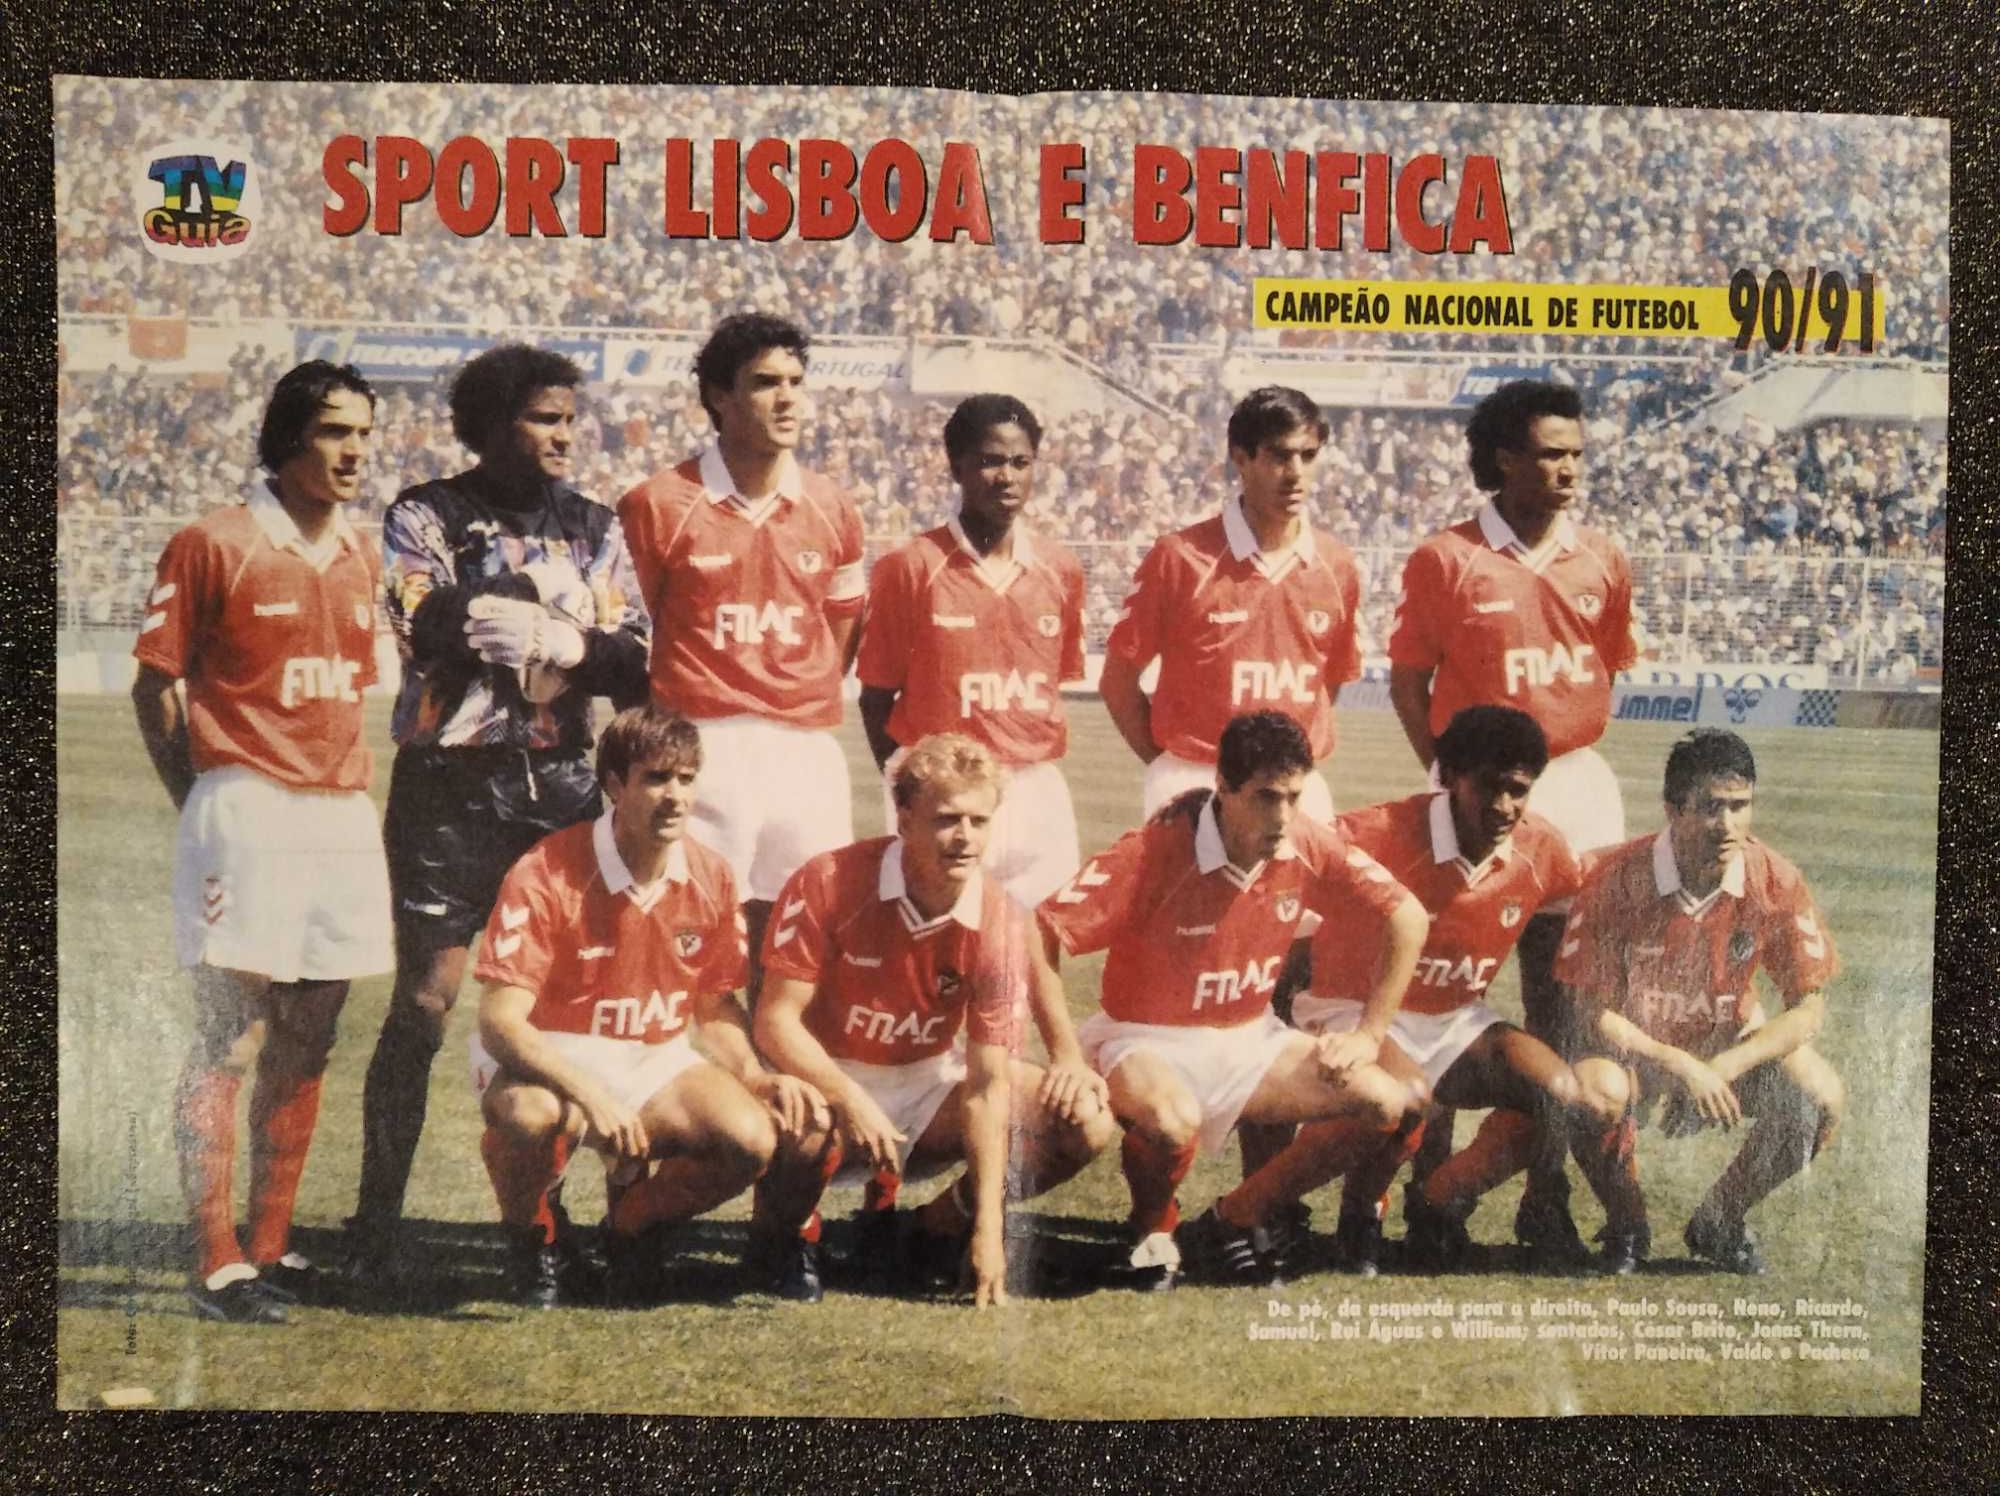 Posters de futebol dos anos 80-90: Benfica, Porto, Sporting